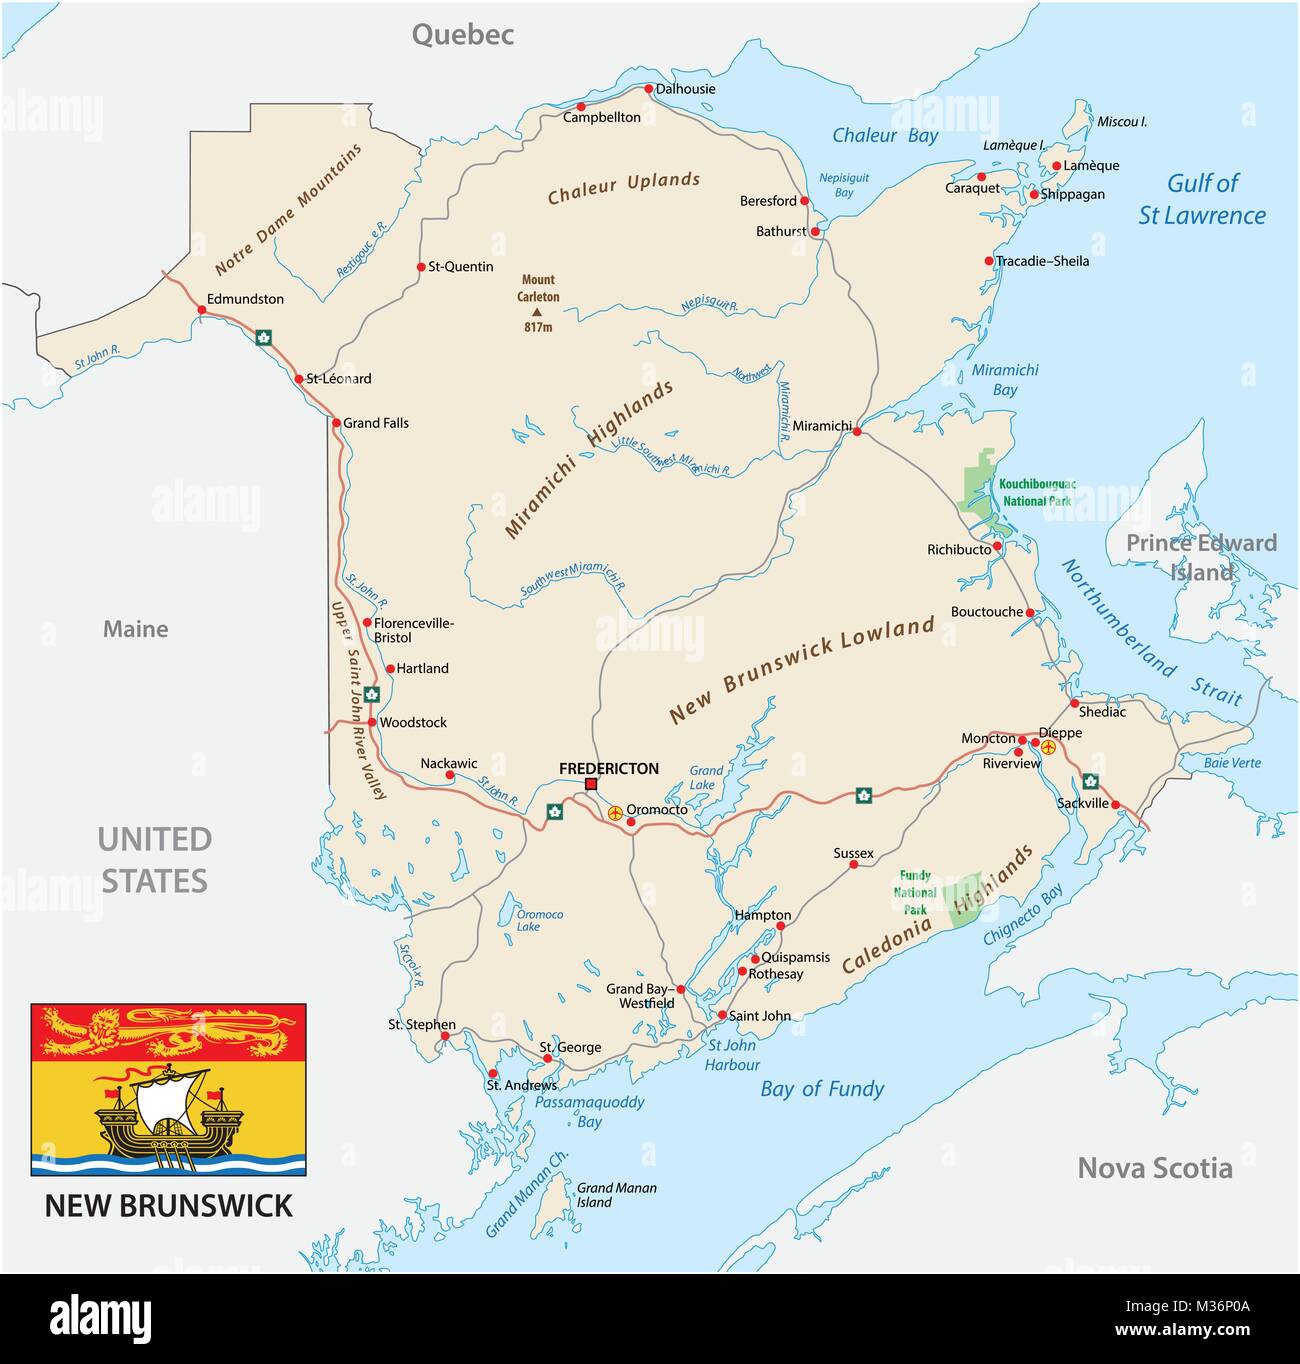 Carte routière avec pavillon de la province de l'Atlantique Nouveau-Brunswick Illustration de Vecteur